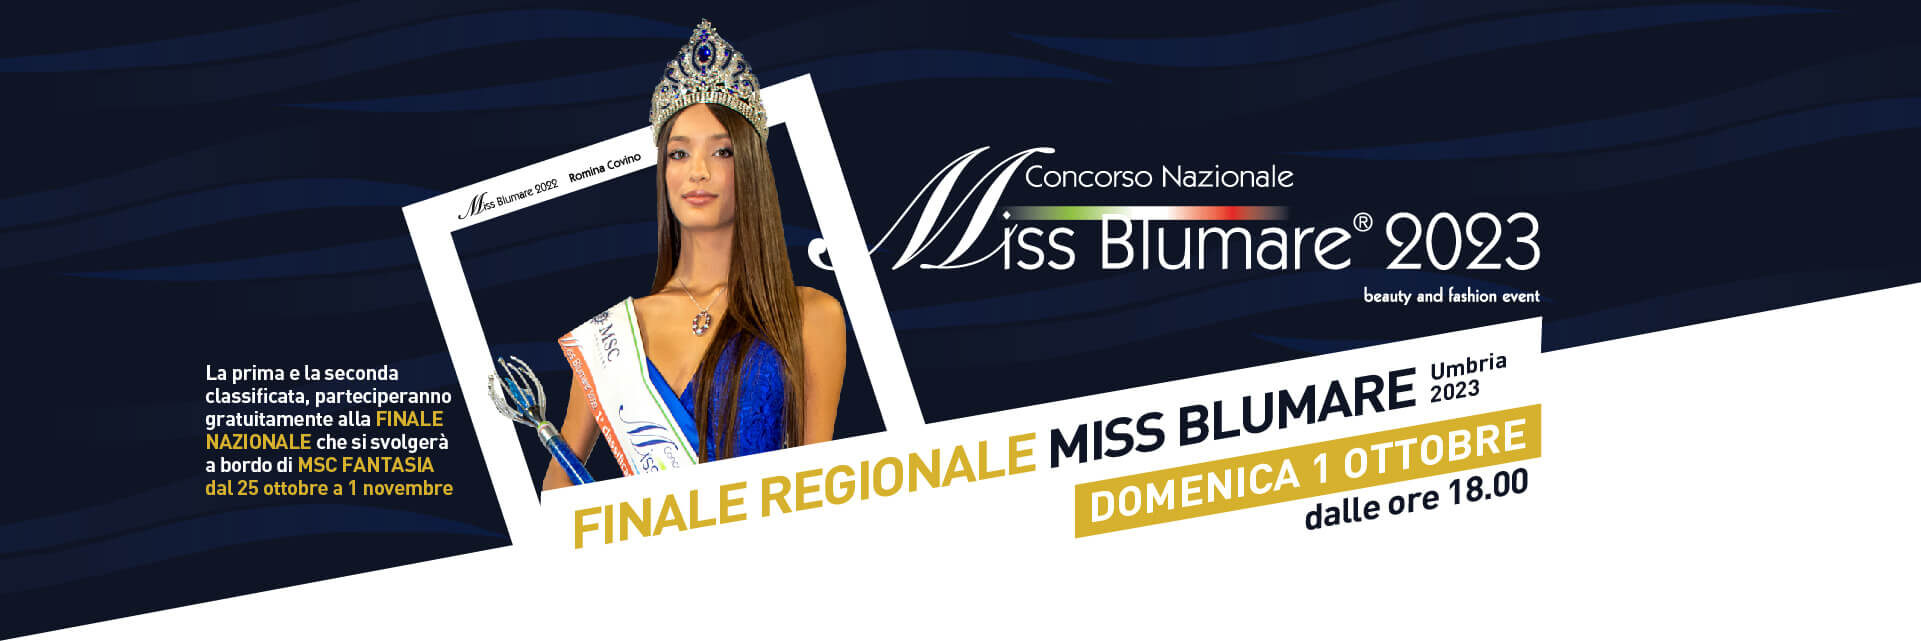 Finale regionale Miss Blumare Umbria 2023